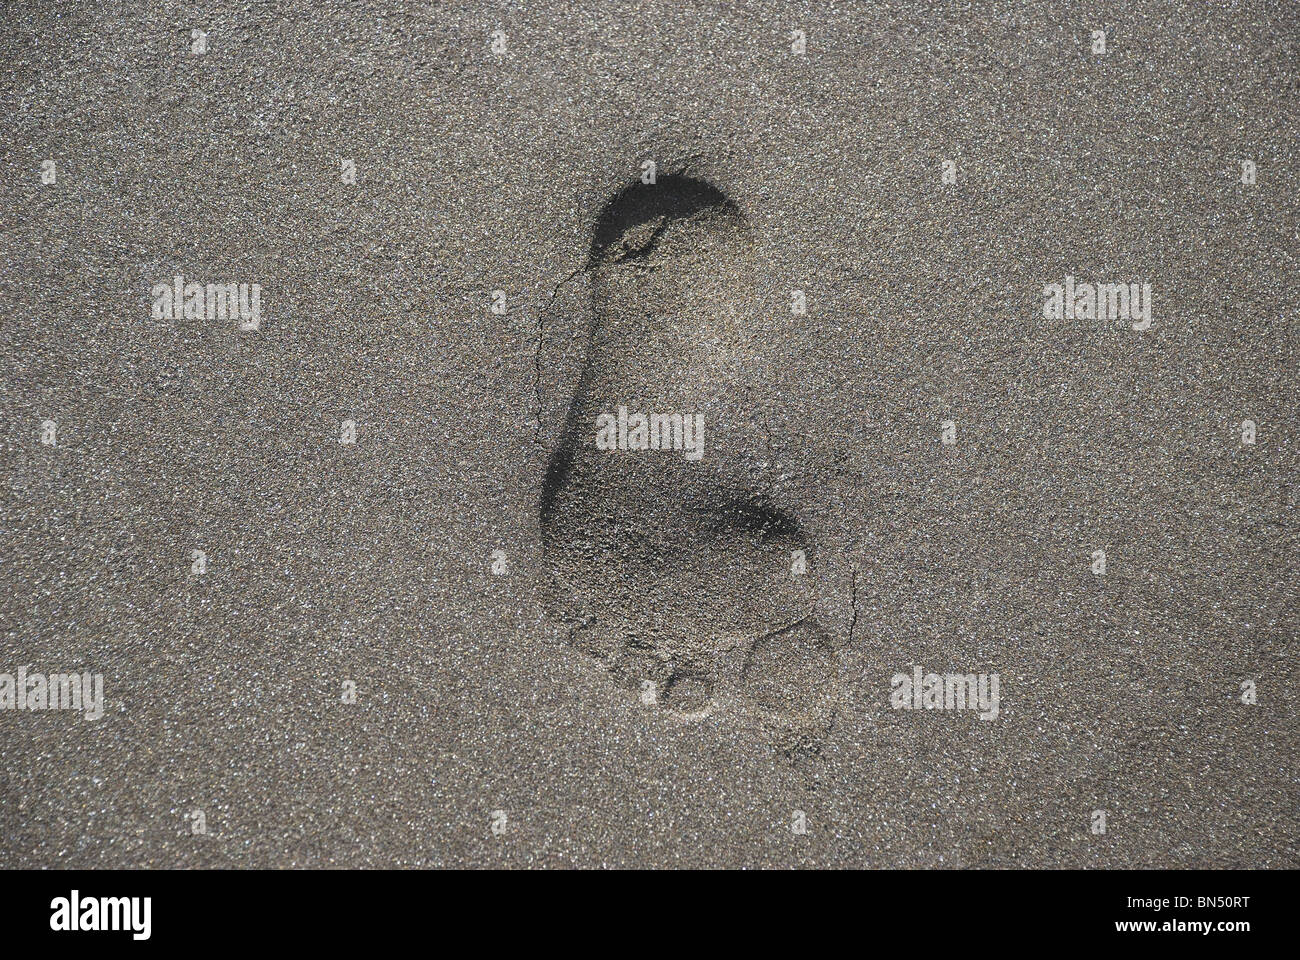 Ein Eindruck des menschlichen Fußes in nassen Seesand graviert Stockfoto